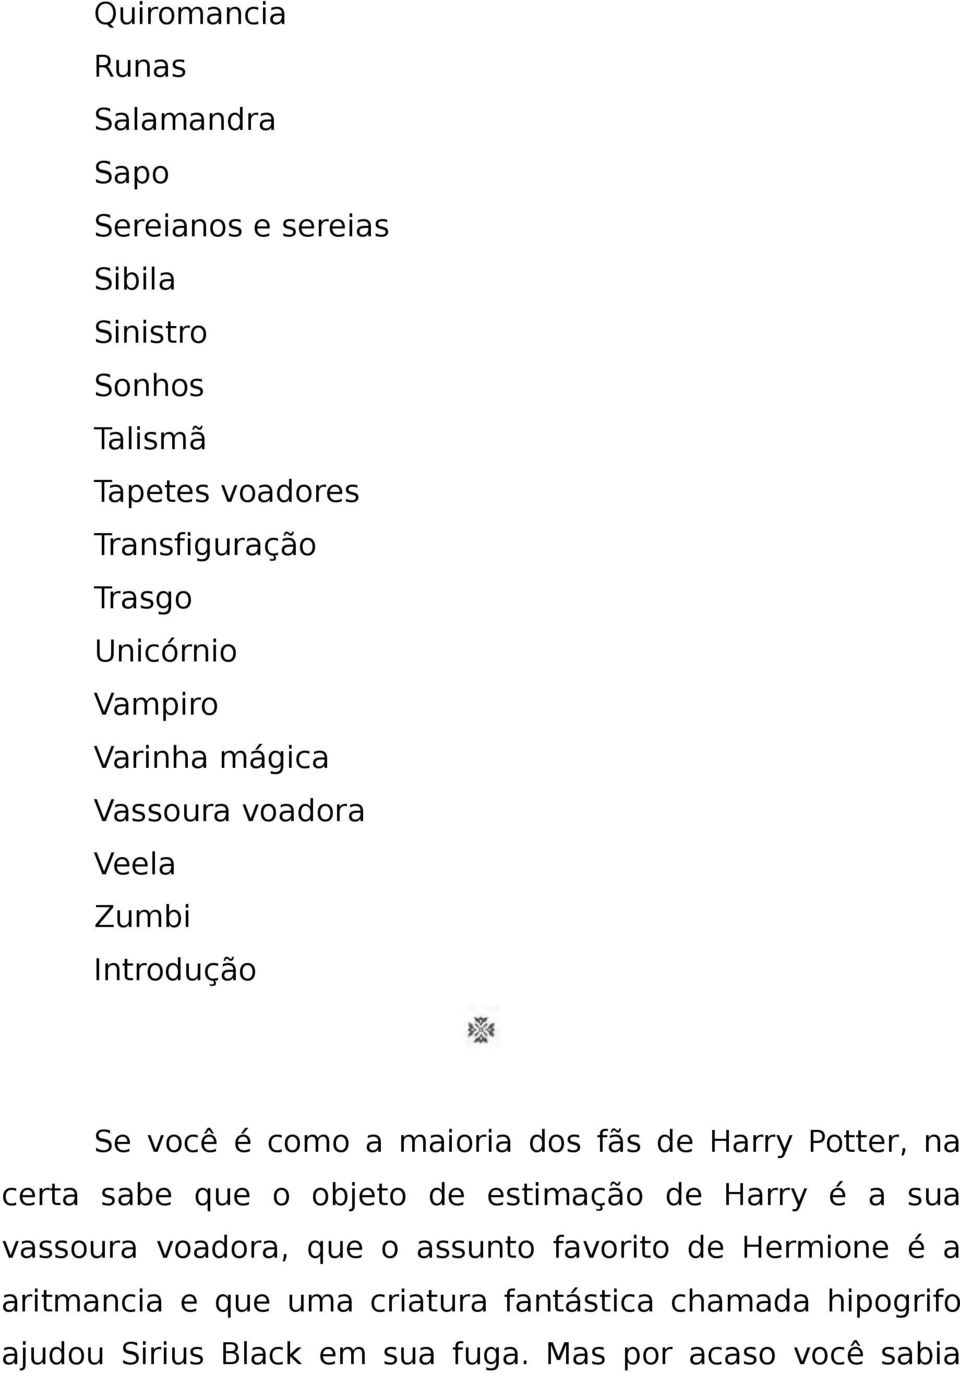 Harry Potter, na certa sabe que o objeto de estimação de Harry é a sua vassoura voadora, que o assunto favorito de